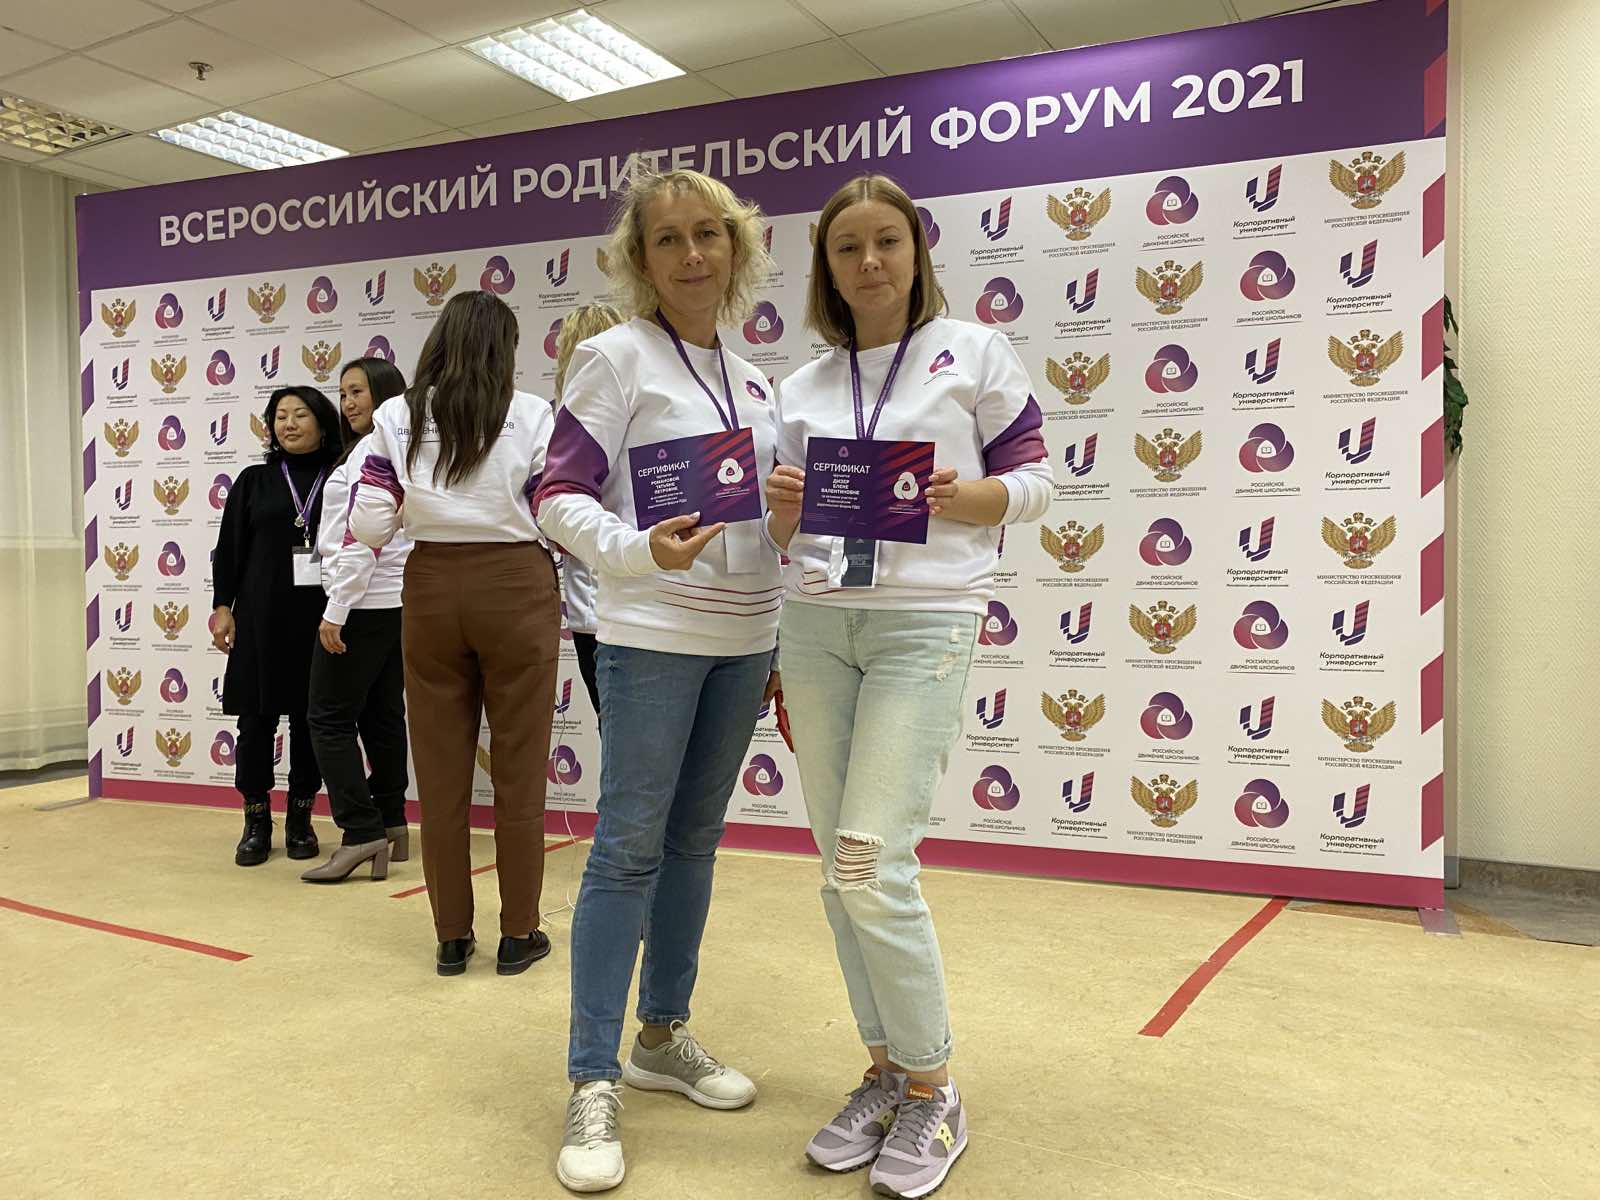 Севастопольские родители стали участниками Всероссийского родительского форума РДШ